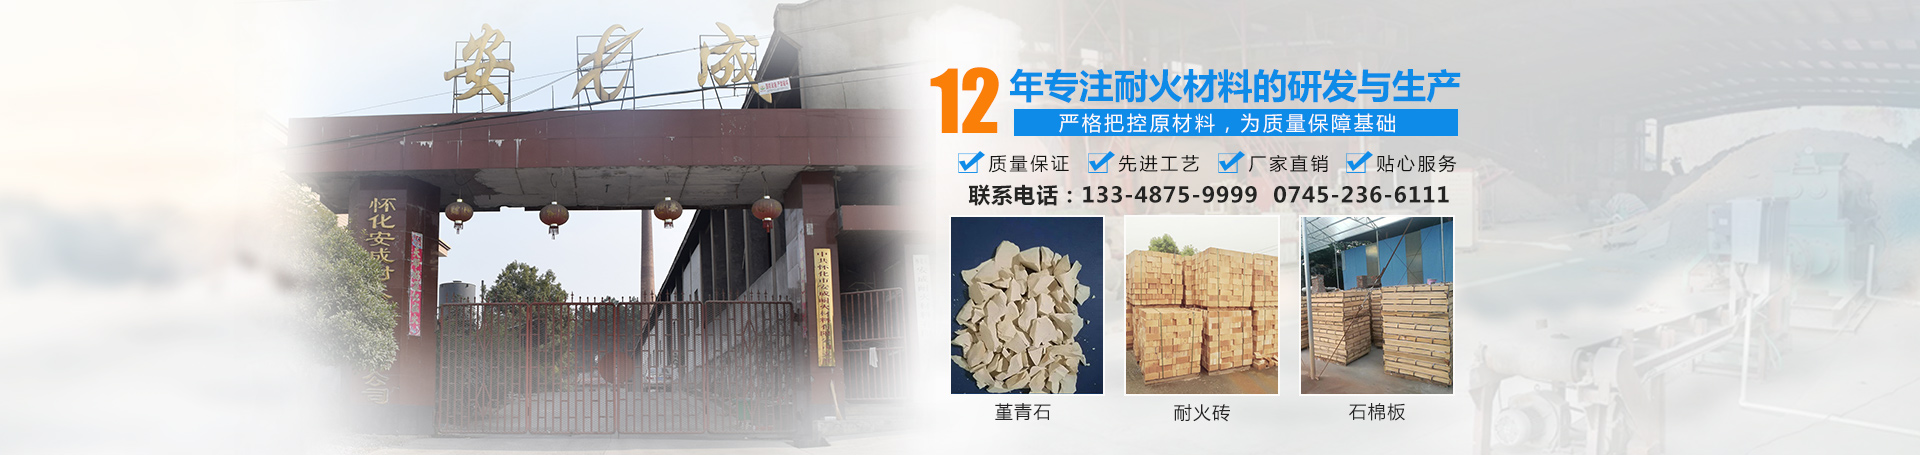 天博·（中国）|官方网站-TB SPORTS天博网站
_耐火砖|石棉板|怀化耐火材料哪里好